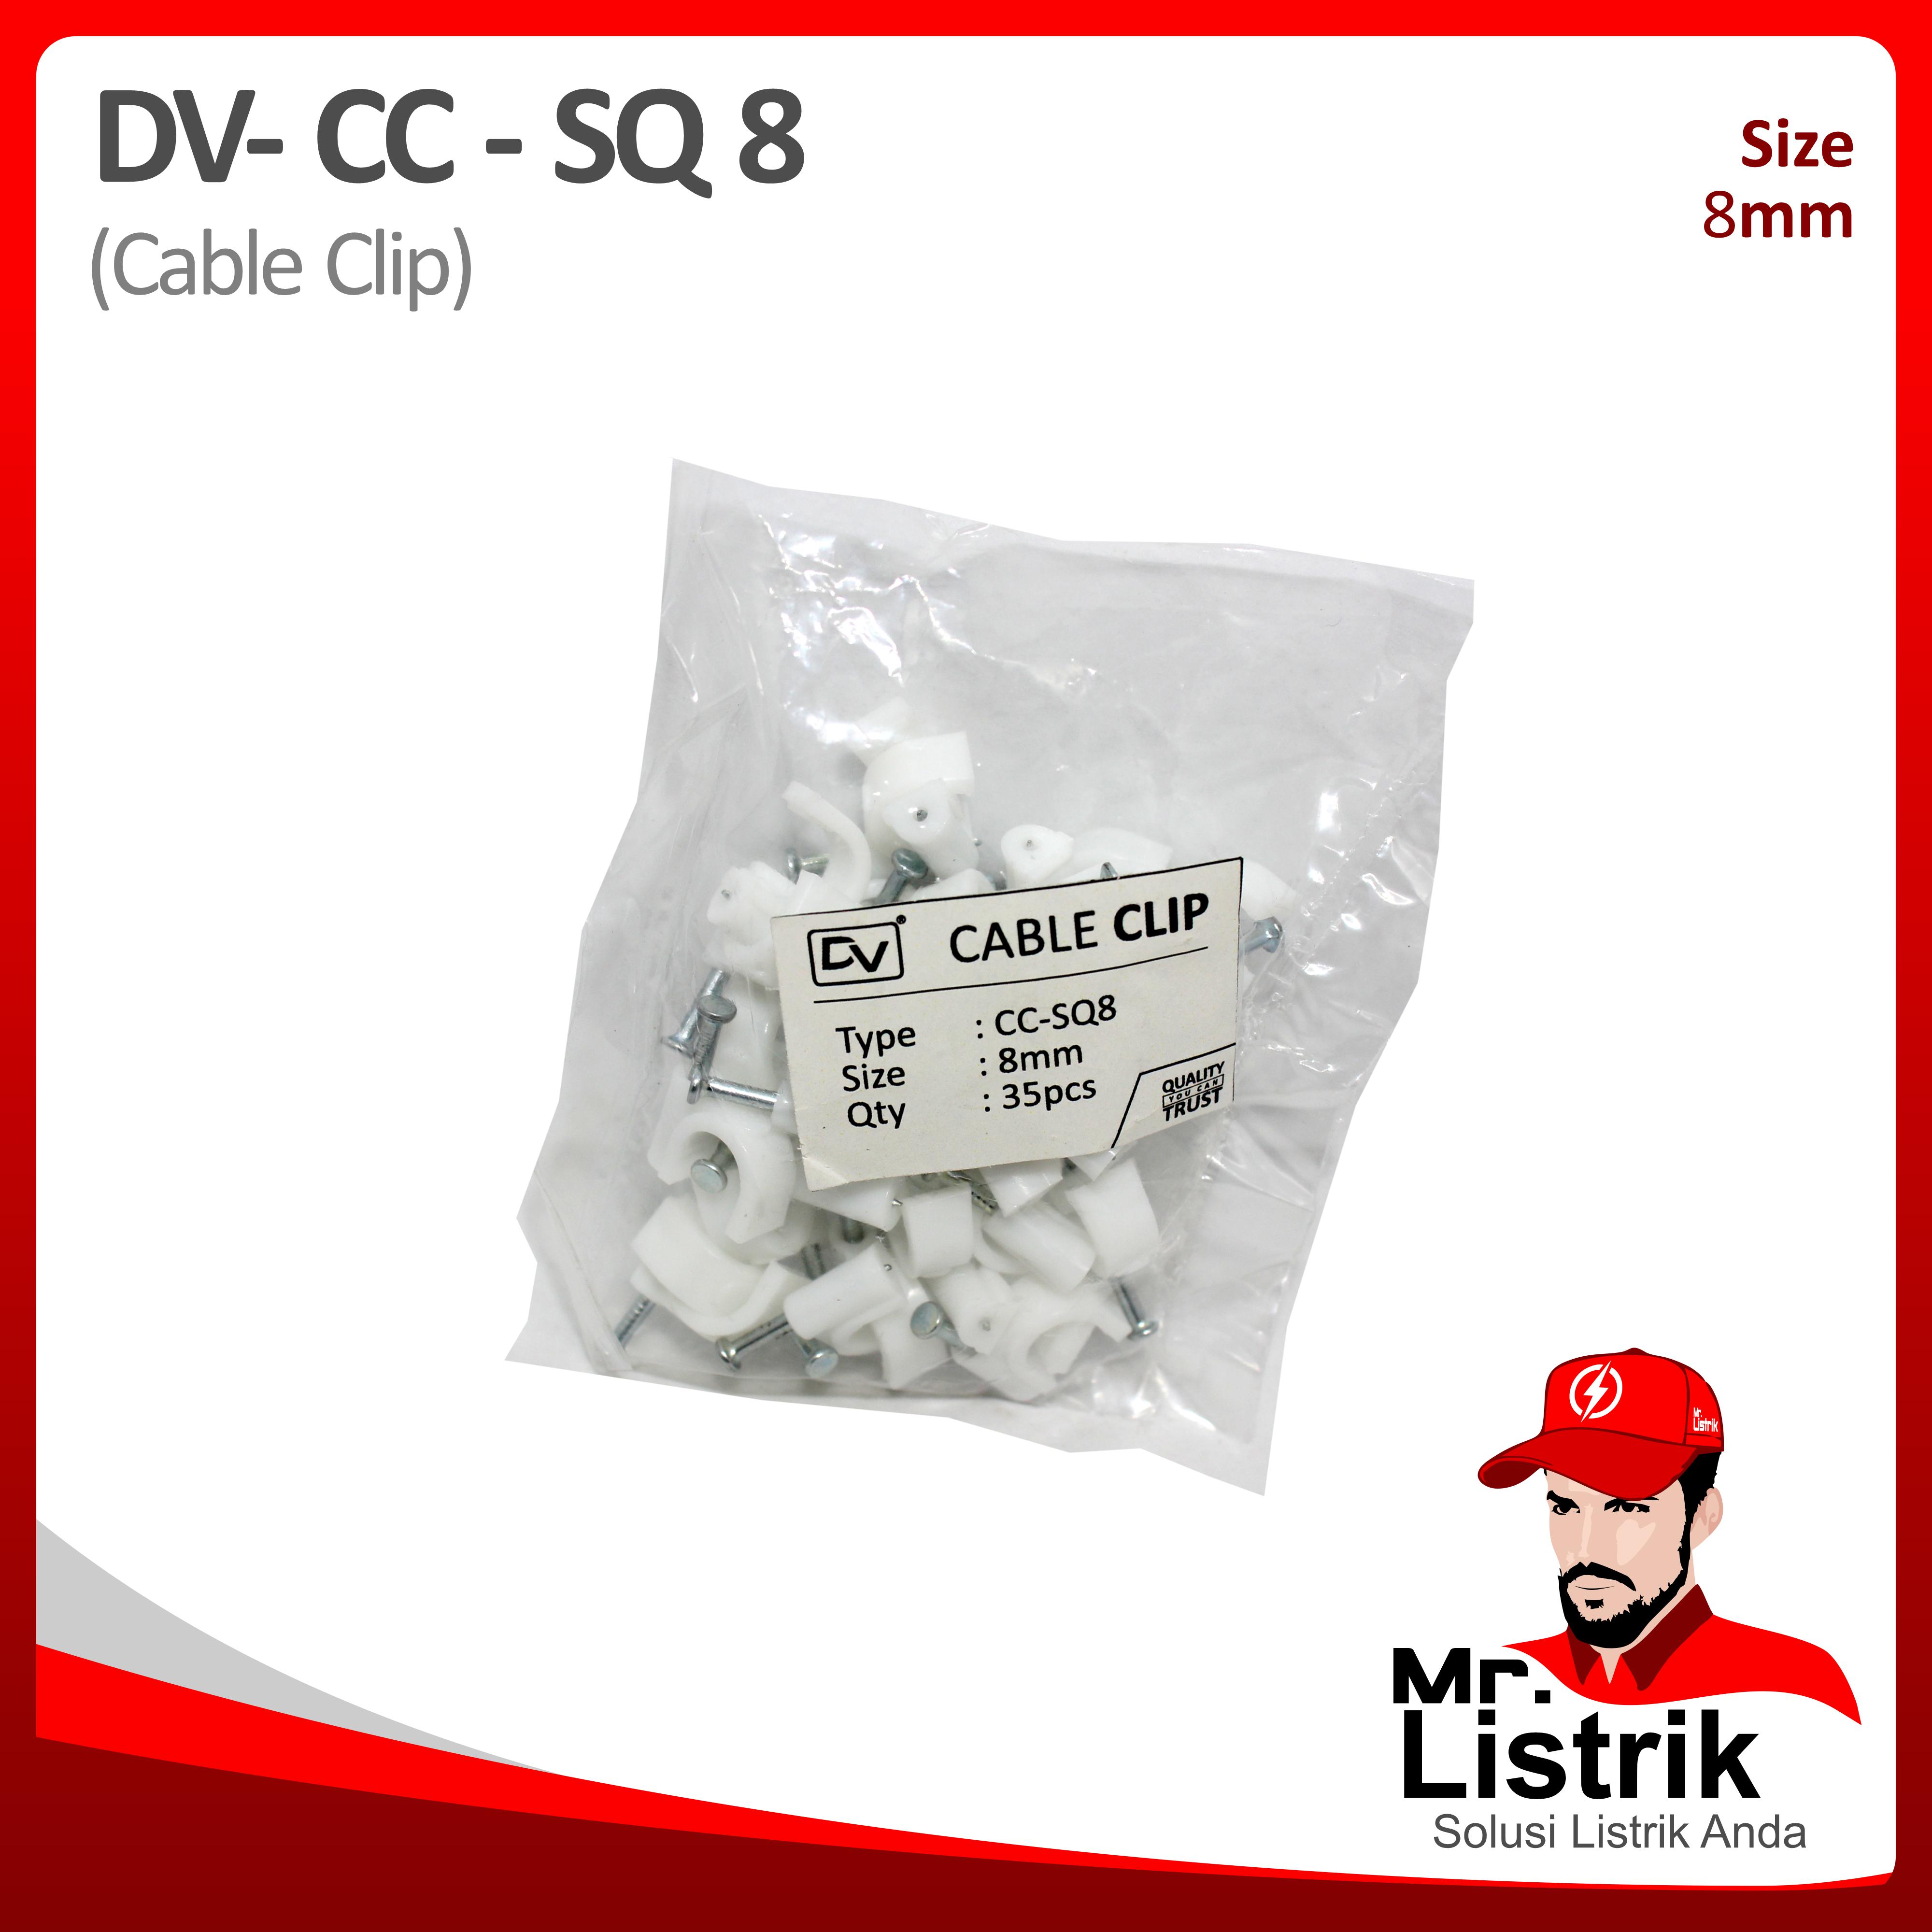 Cable Clip 8mm DV CC-SQ 8